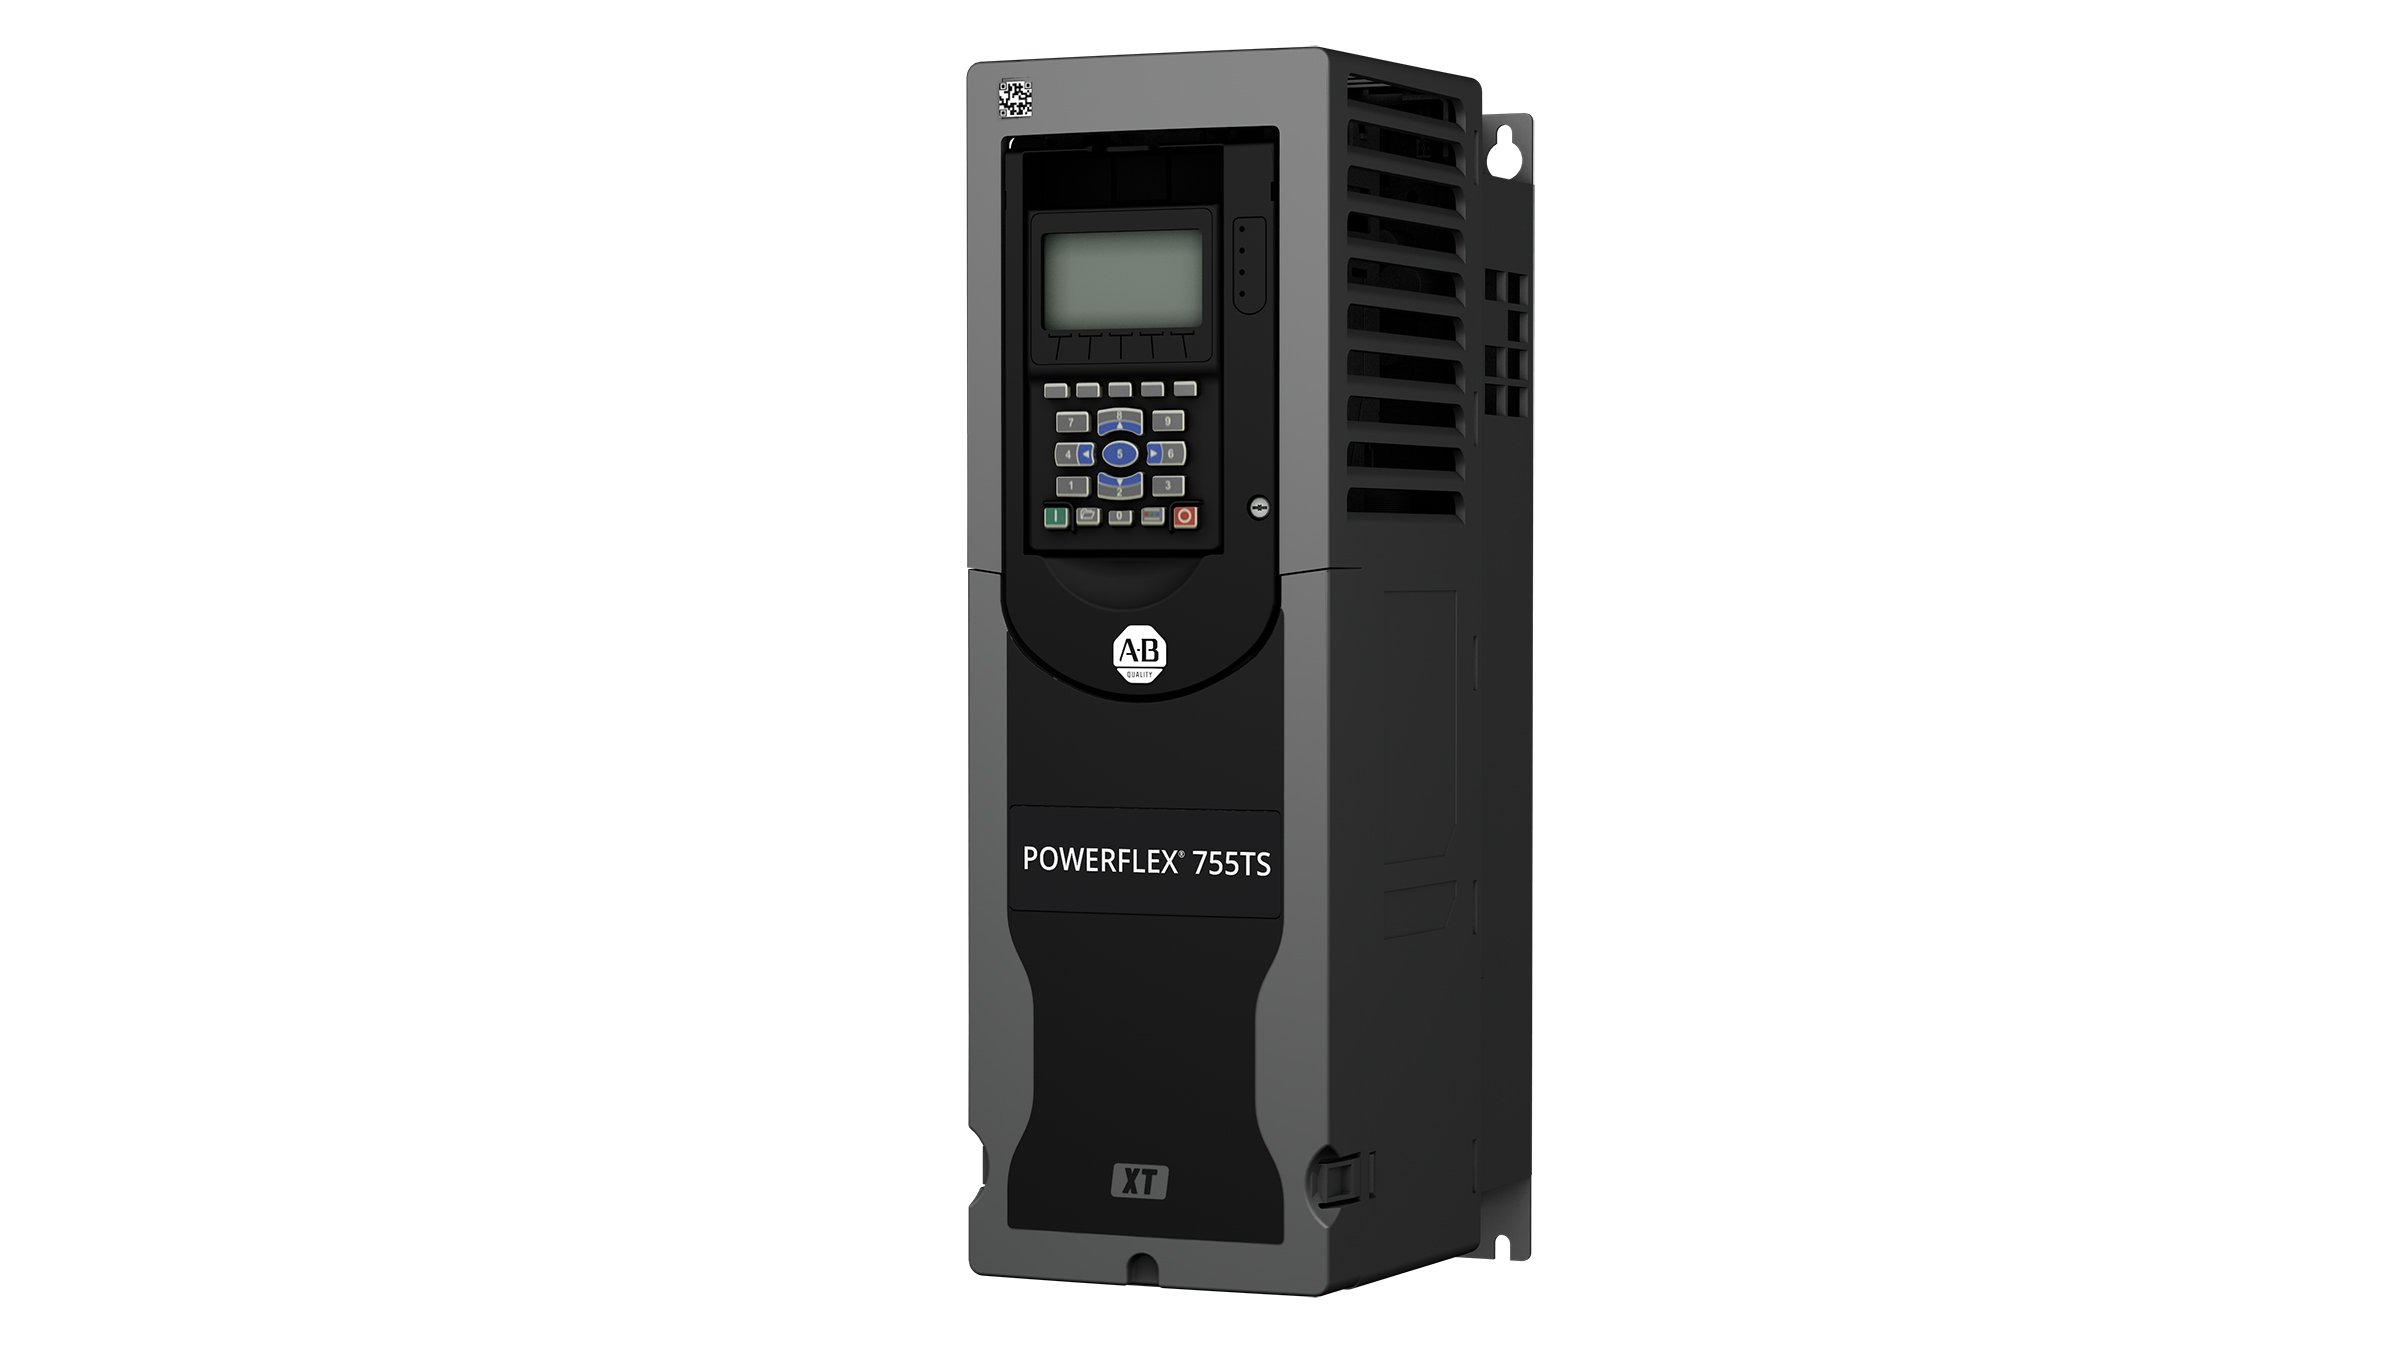 Variador de frecuencia variable PowerFlex 755TS rectangular gris oscuro con botones frontales y pantalla y diseño especial de protección contra gases corrosivos (XT)